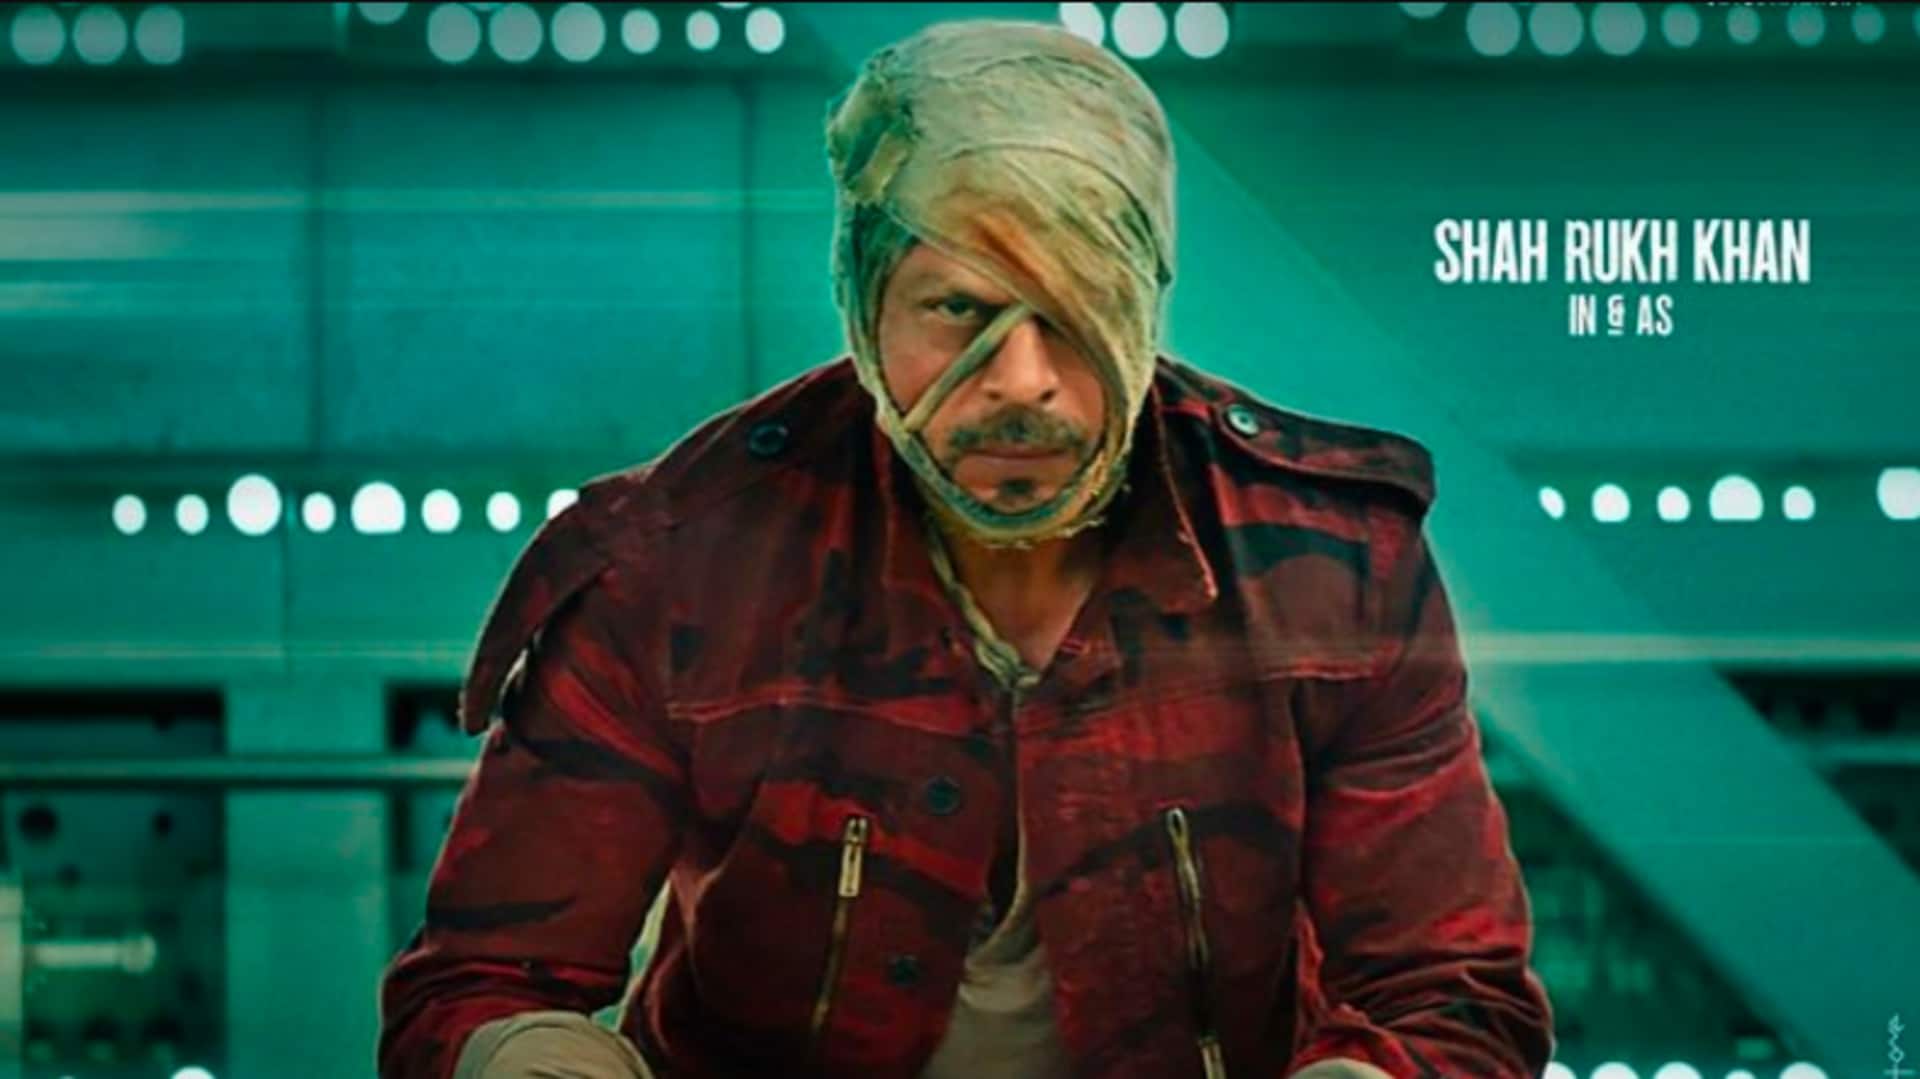 फिल्म 'जवान' का टीजर जारी, शाहरुख खान का दिखा धांसू अवतार 